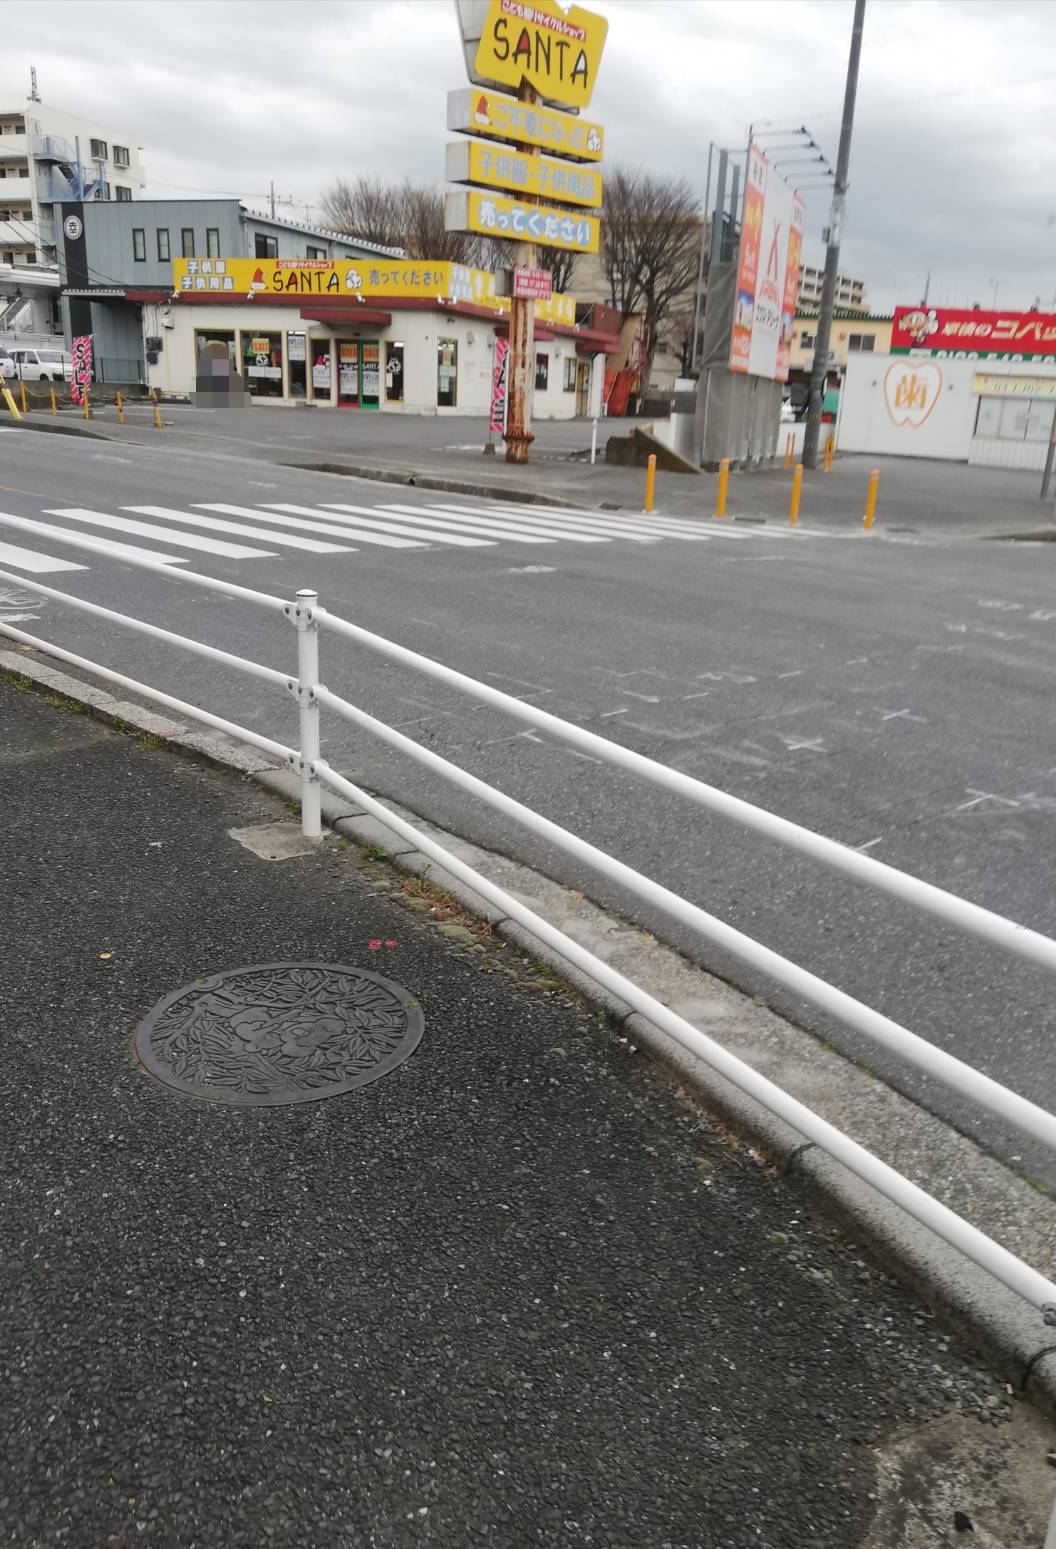 松戸市消防局交差点 松戸新田 で歩道を安全にする為の工事実施 現地状況 黄色いポールの設置も進む 松戸ロード 松戸の地域情報